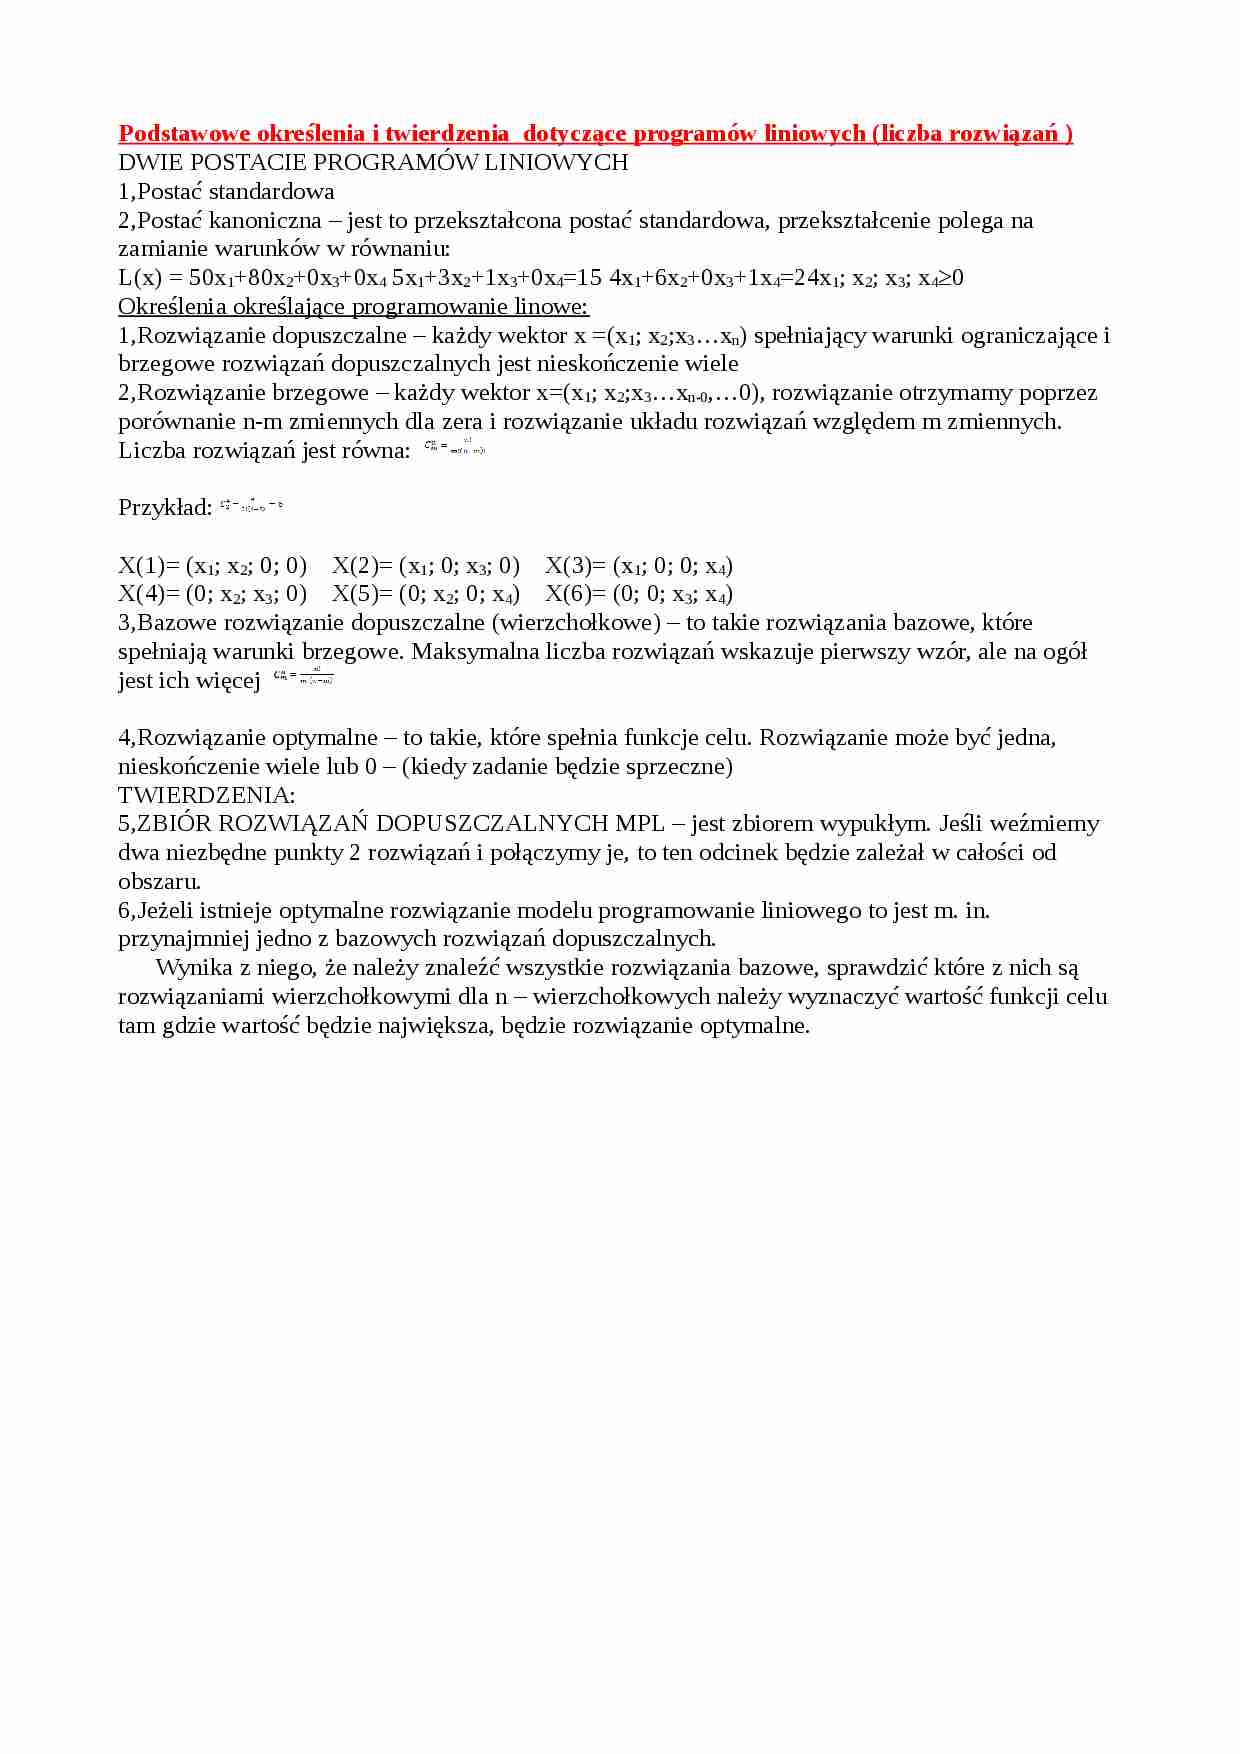 Podstawowe okre_lenia i twierdzenia  dotyczące programów liniowych (liczba rozwiązań ) - strona 1